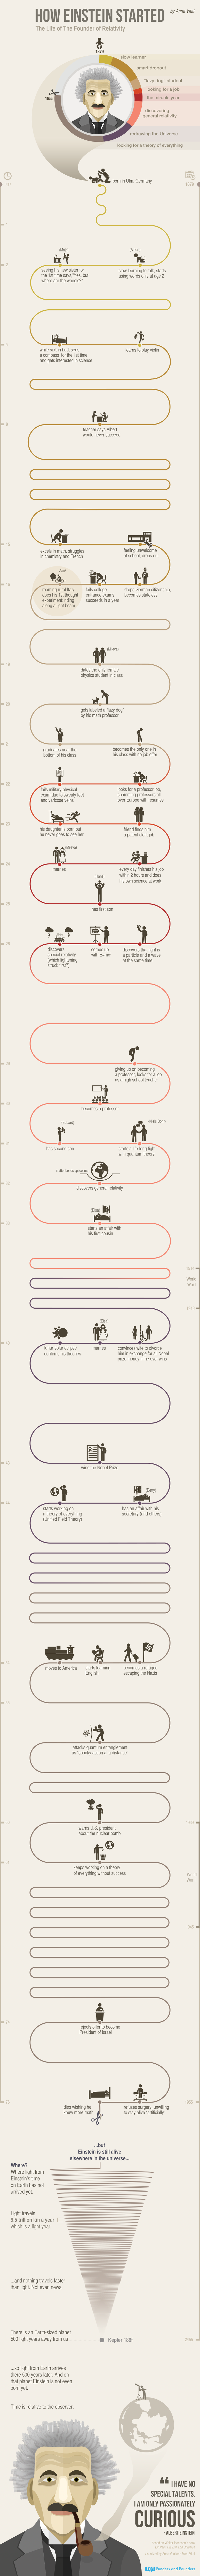 how-einstein-started-infographic